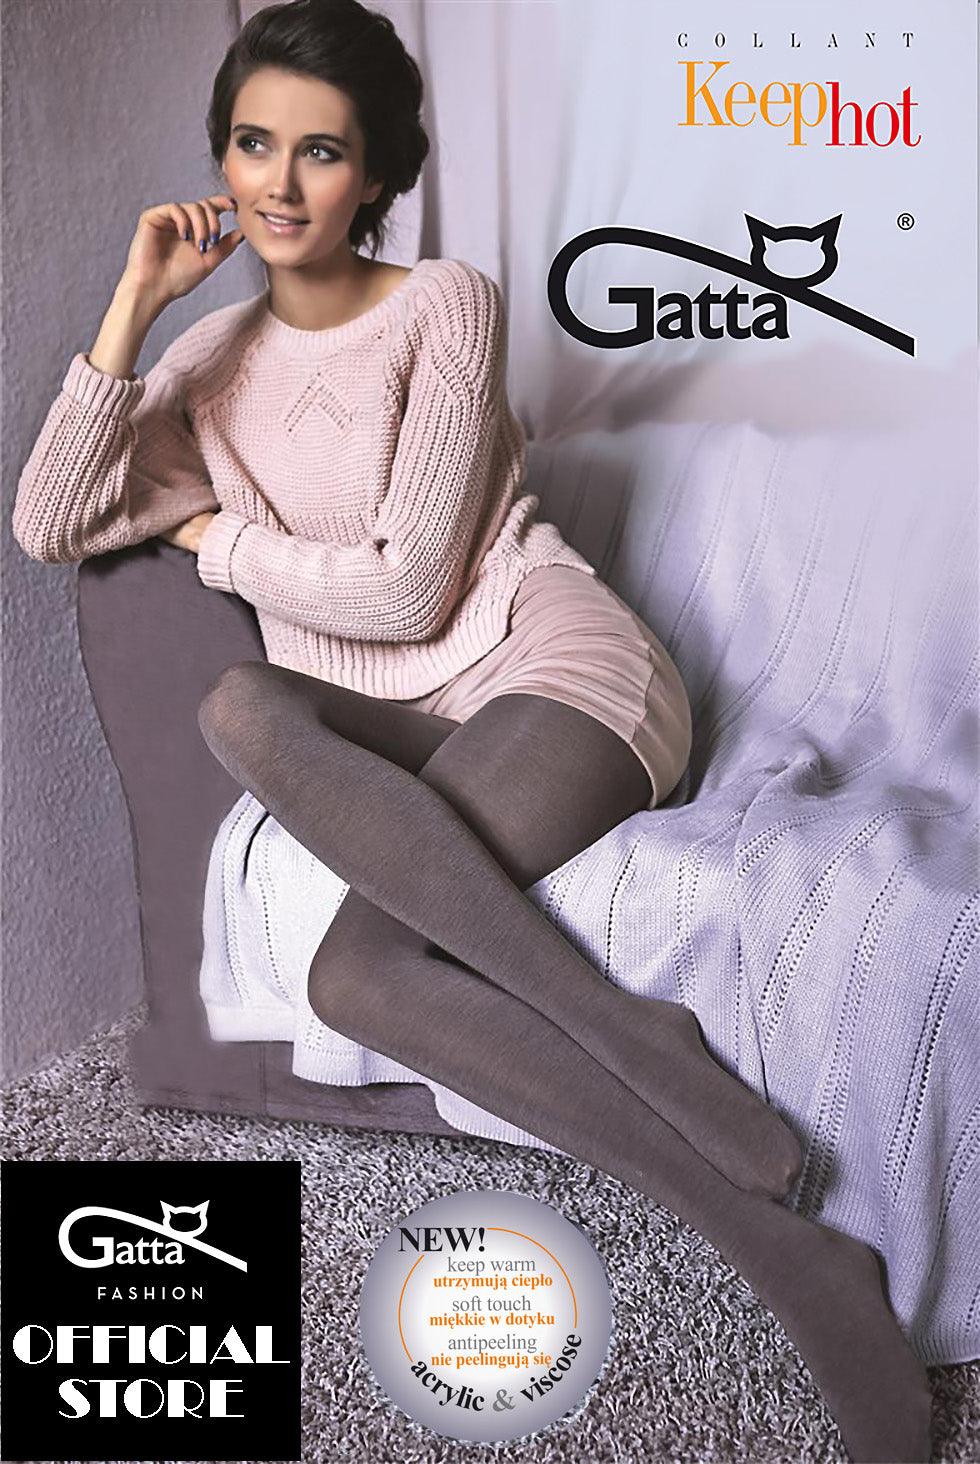 GATTA Wild Cat 02 Patterned Tights 20 Den